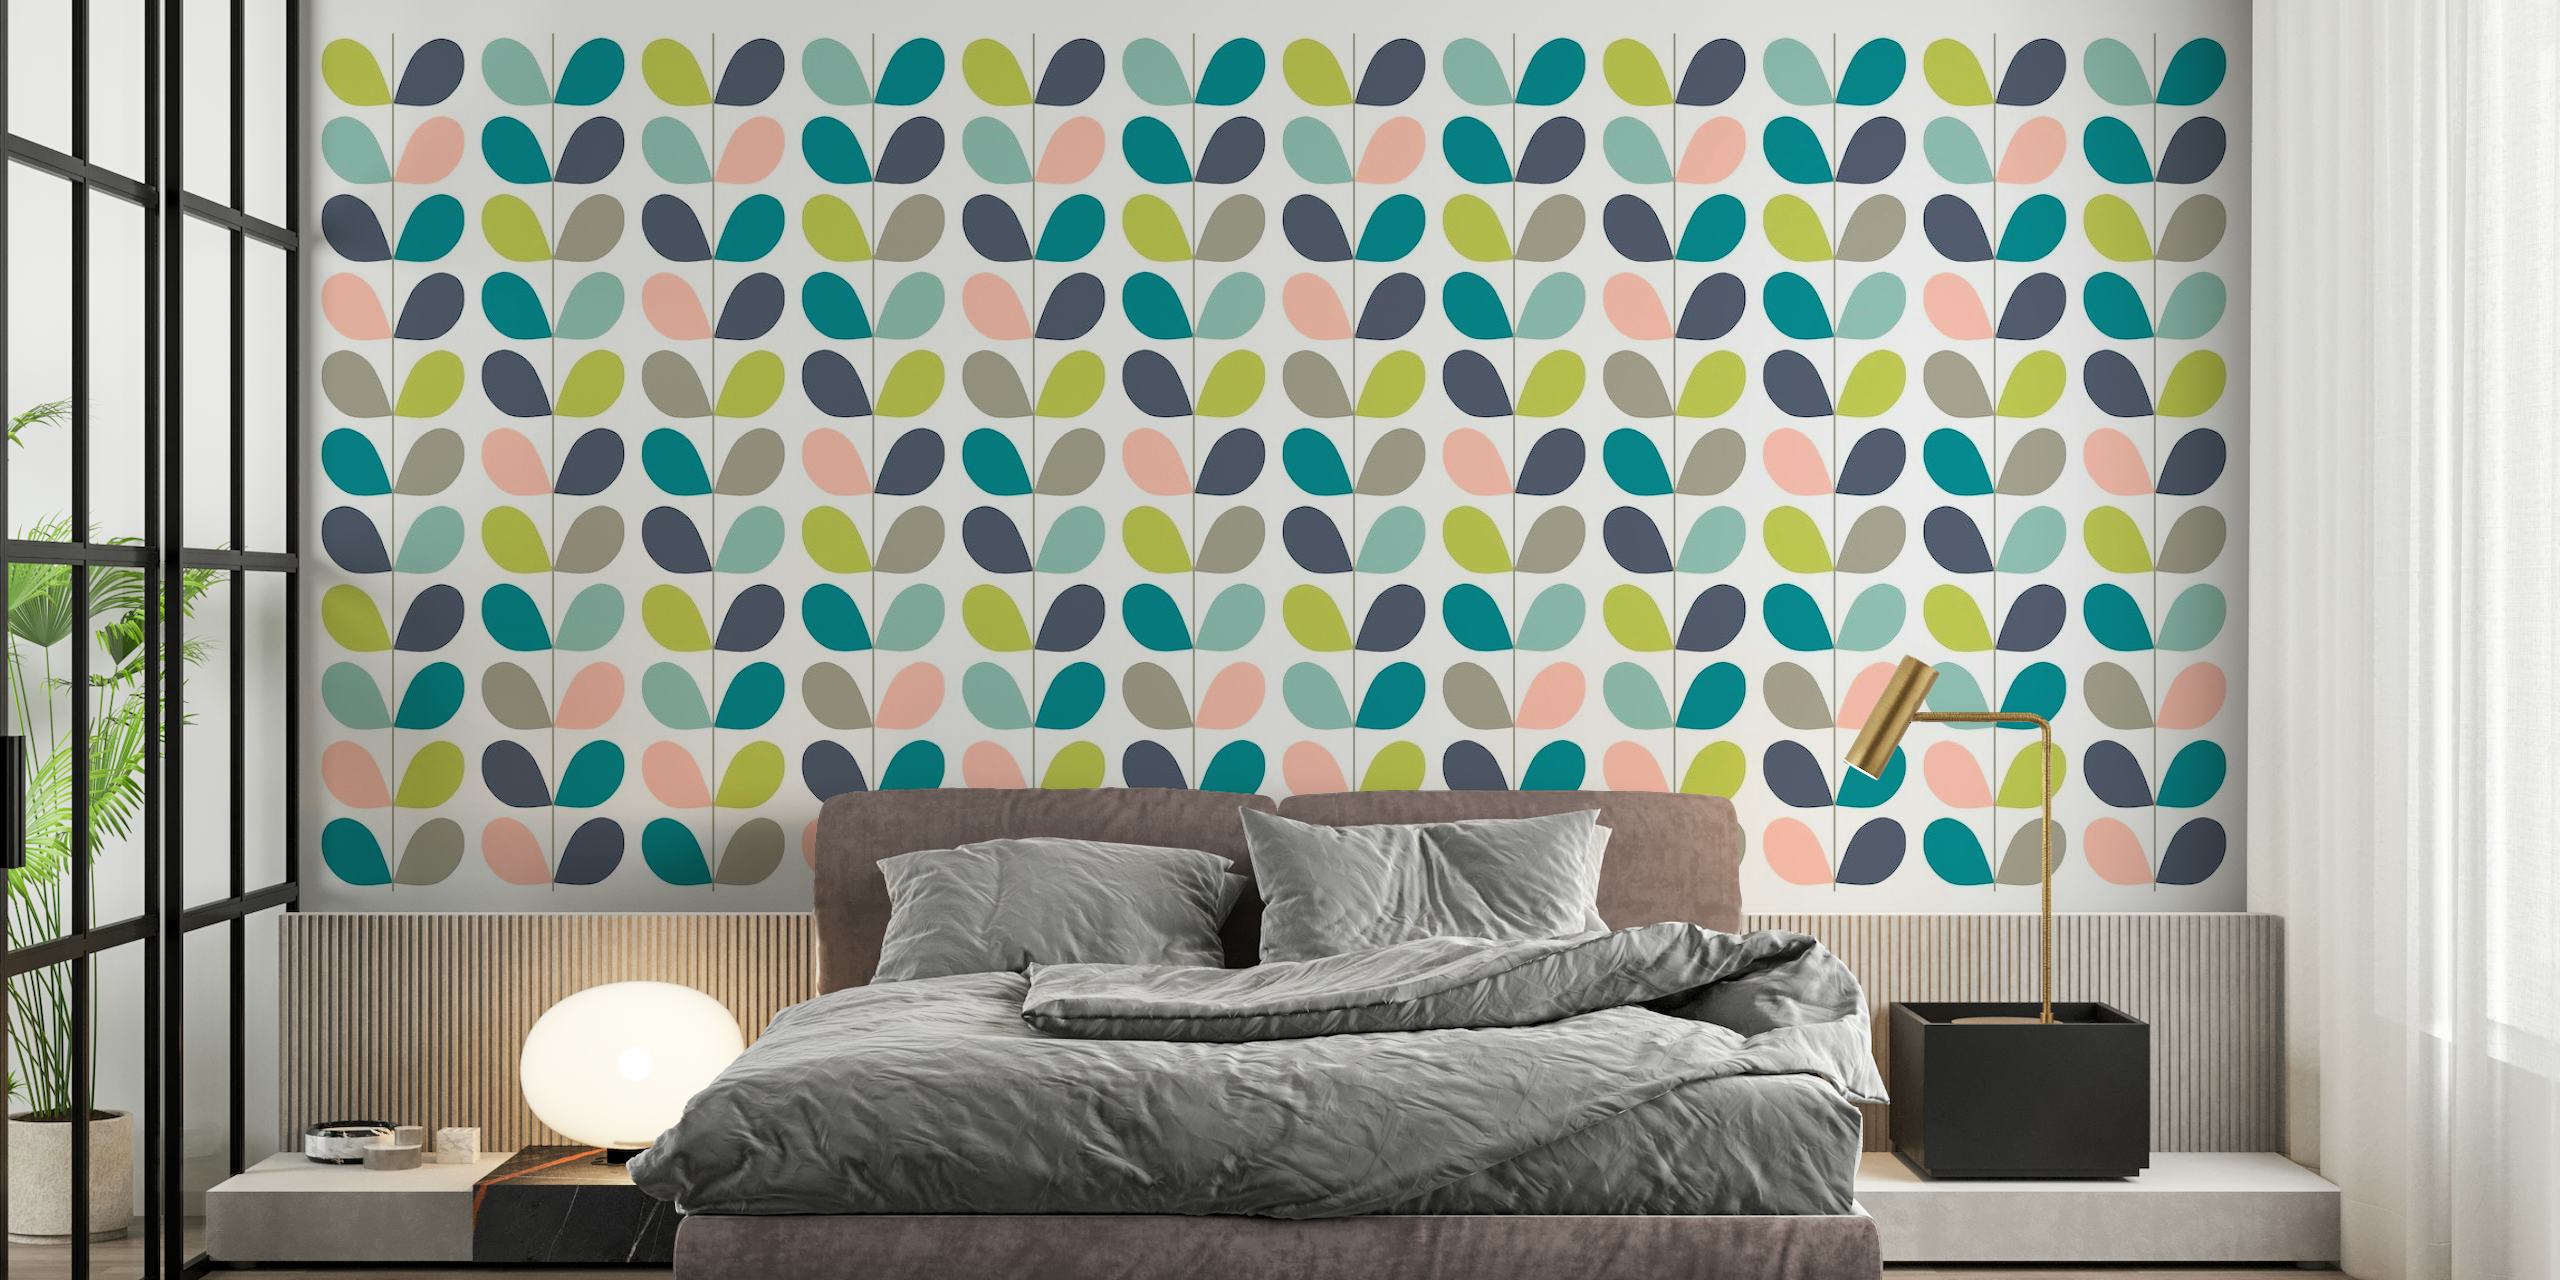 Folhas pastel estilizadas em um padrão minimalista de fotomural vinílico de parede